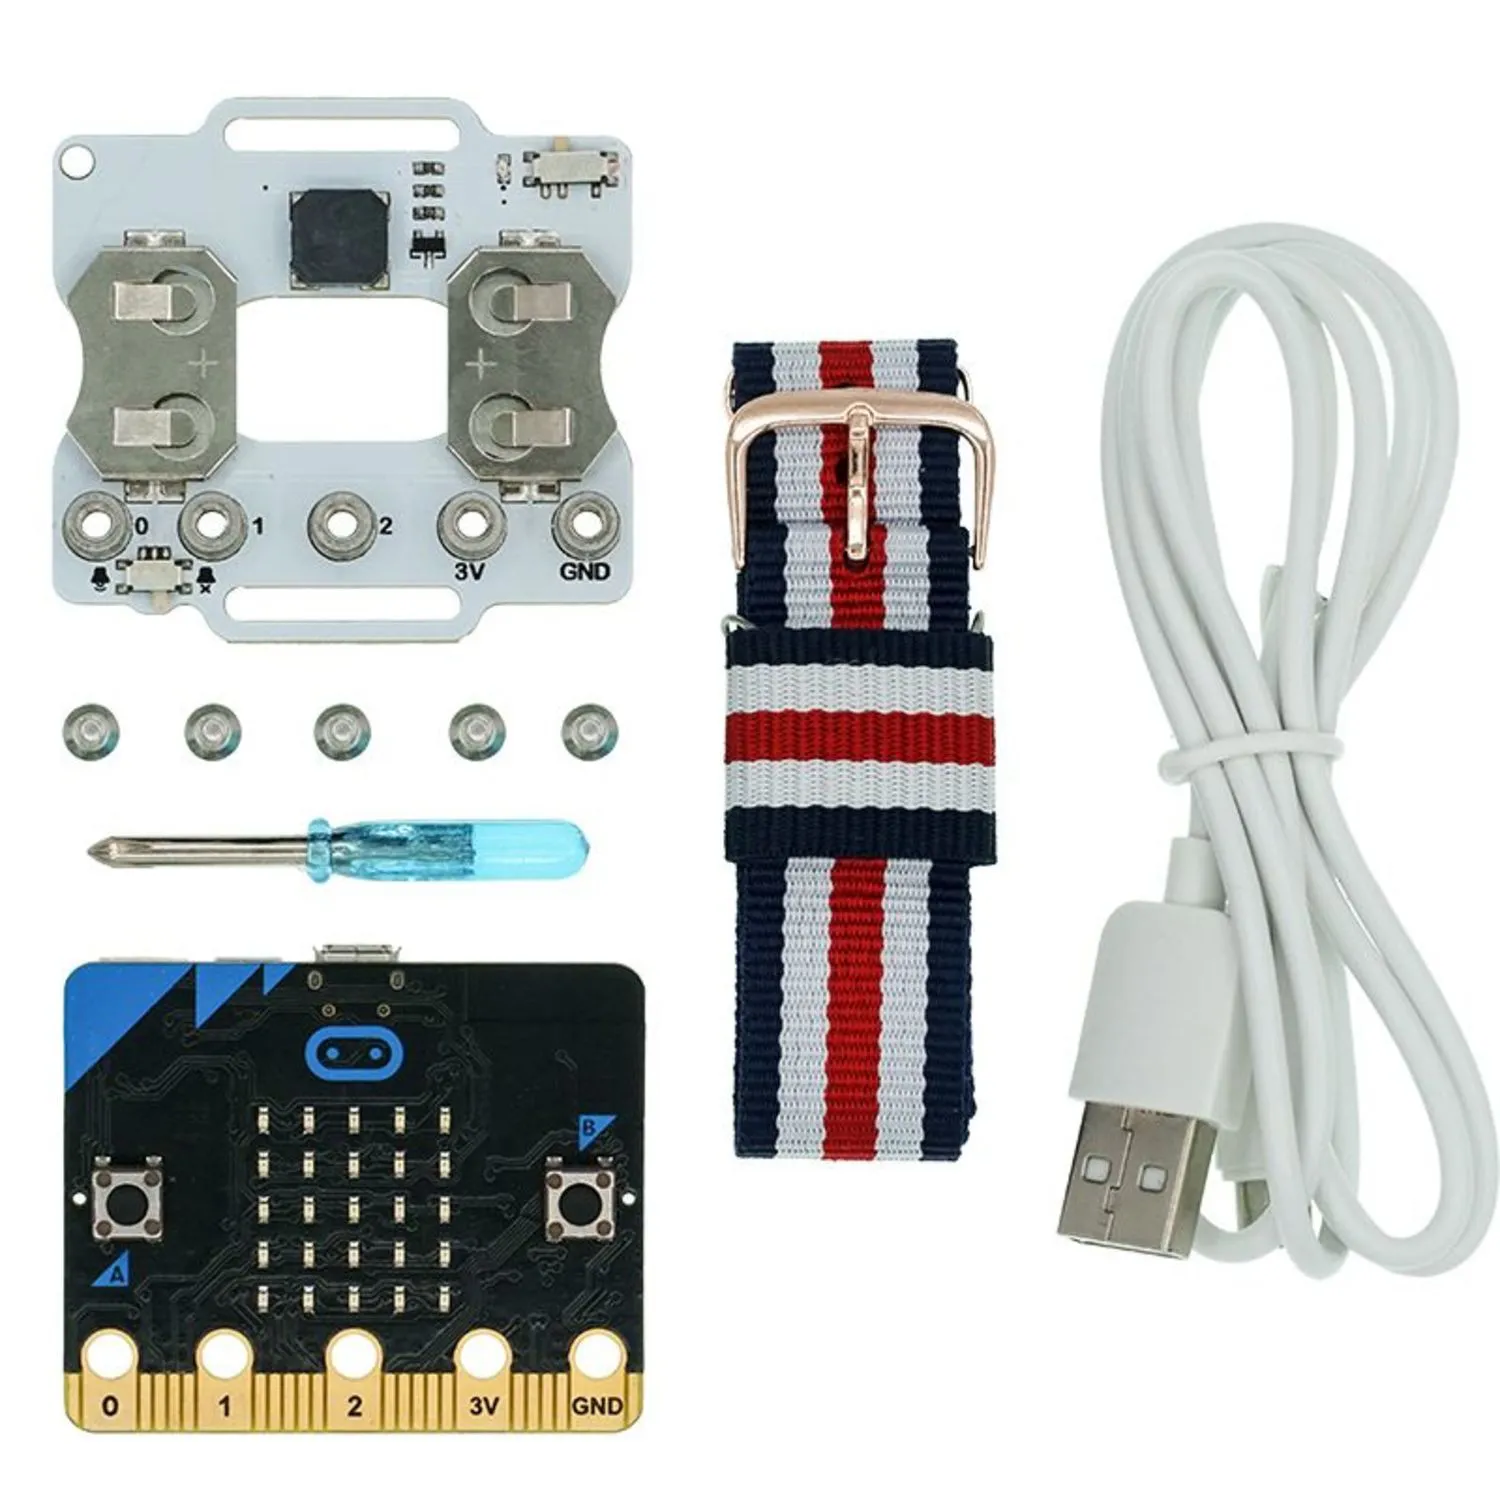 Photo of micro:bit smart coding kit（without micro:bit)